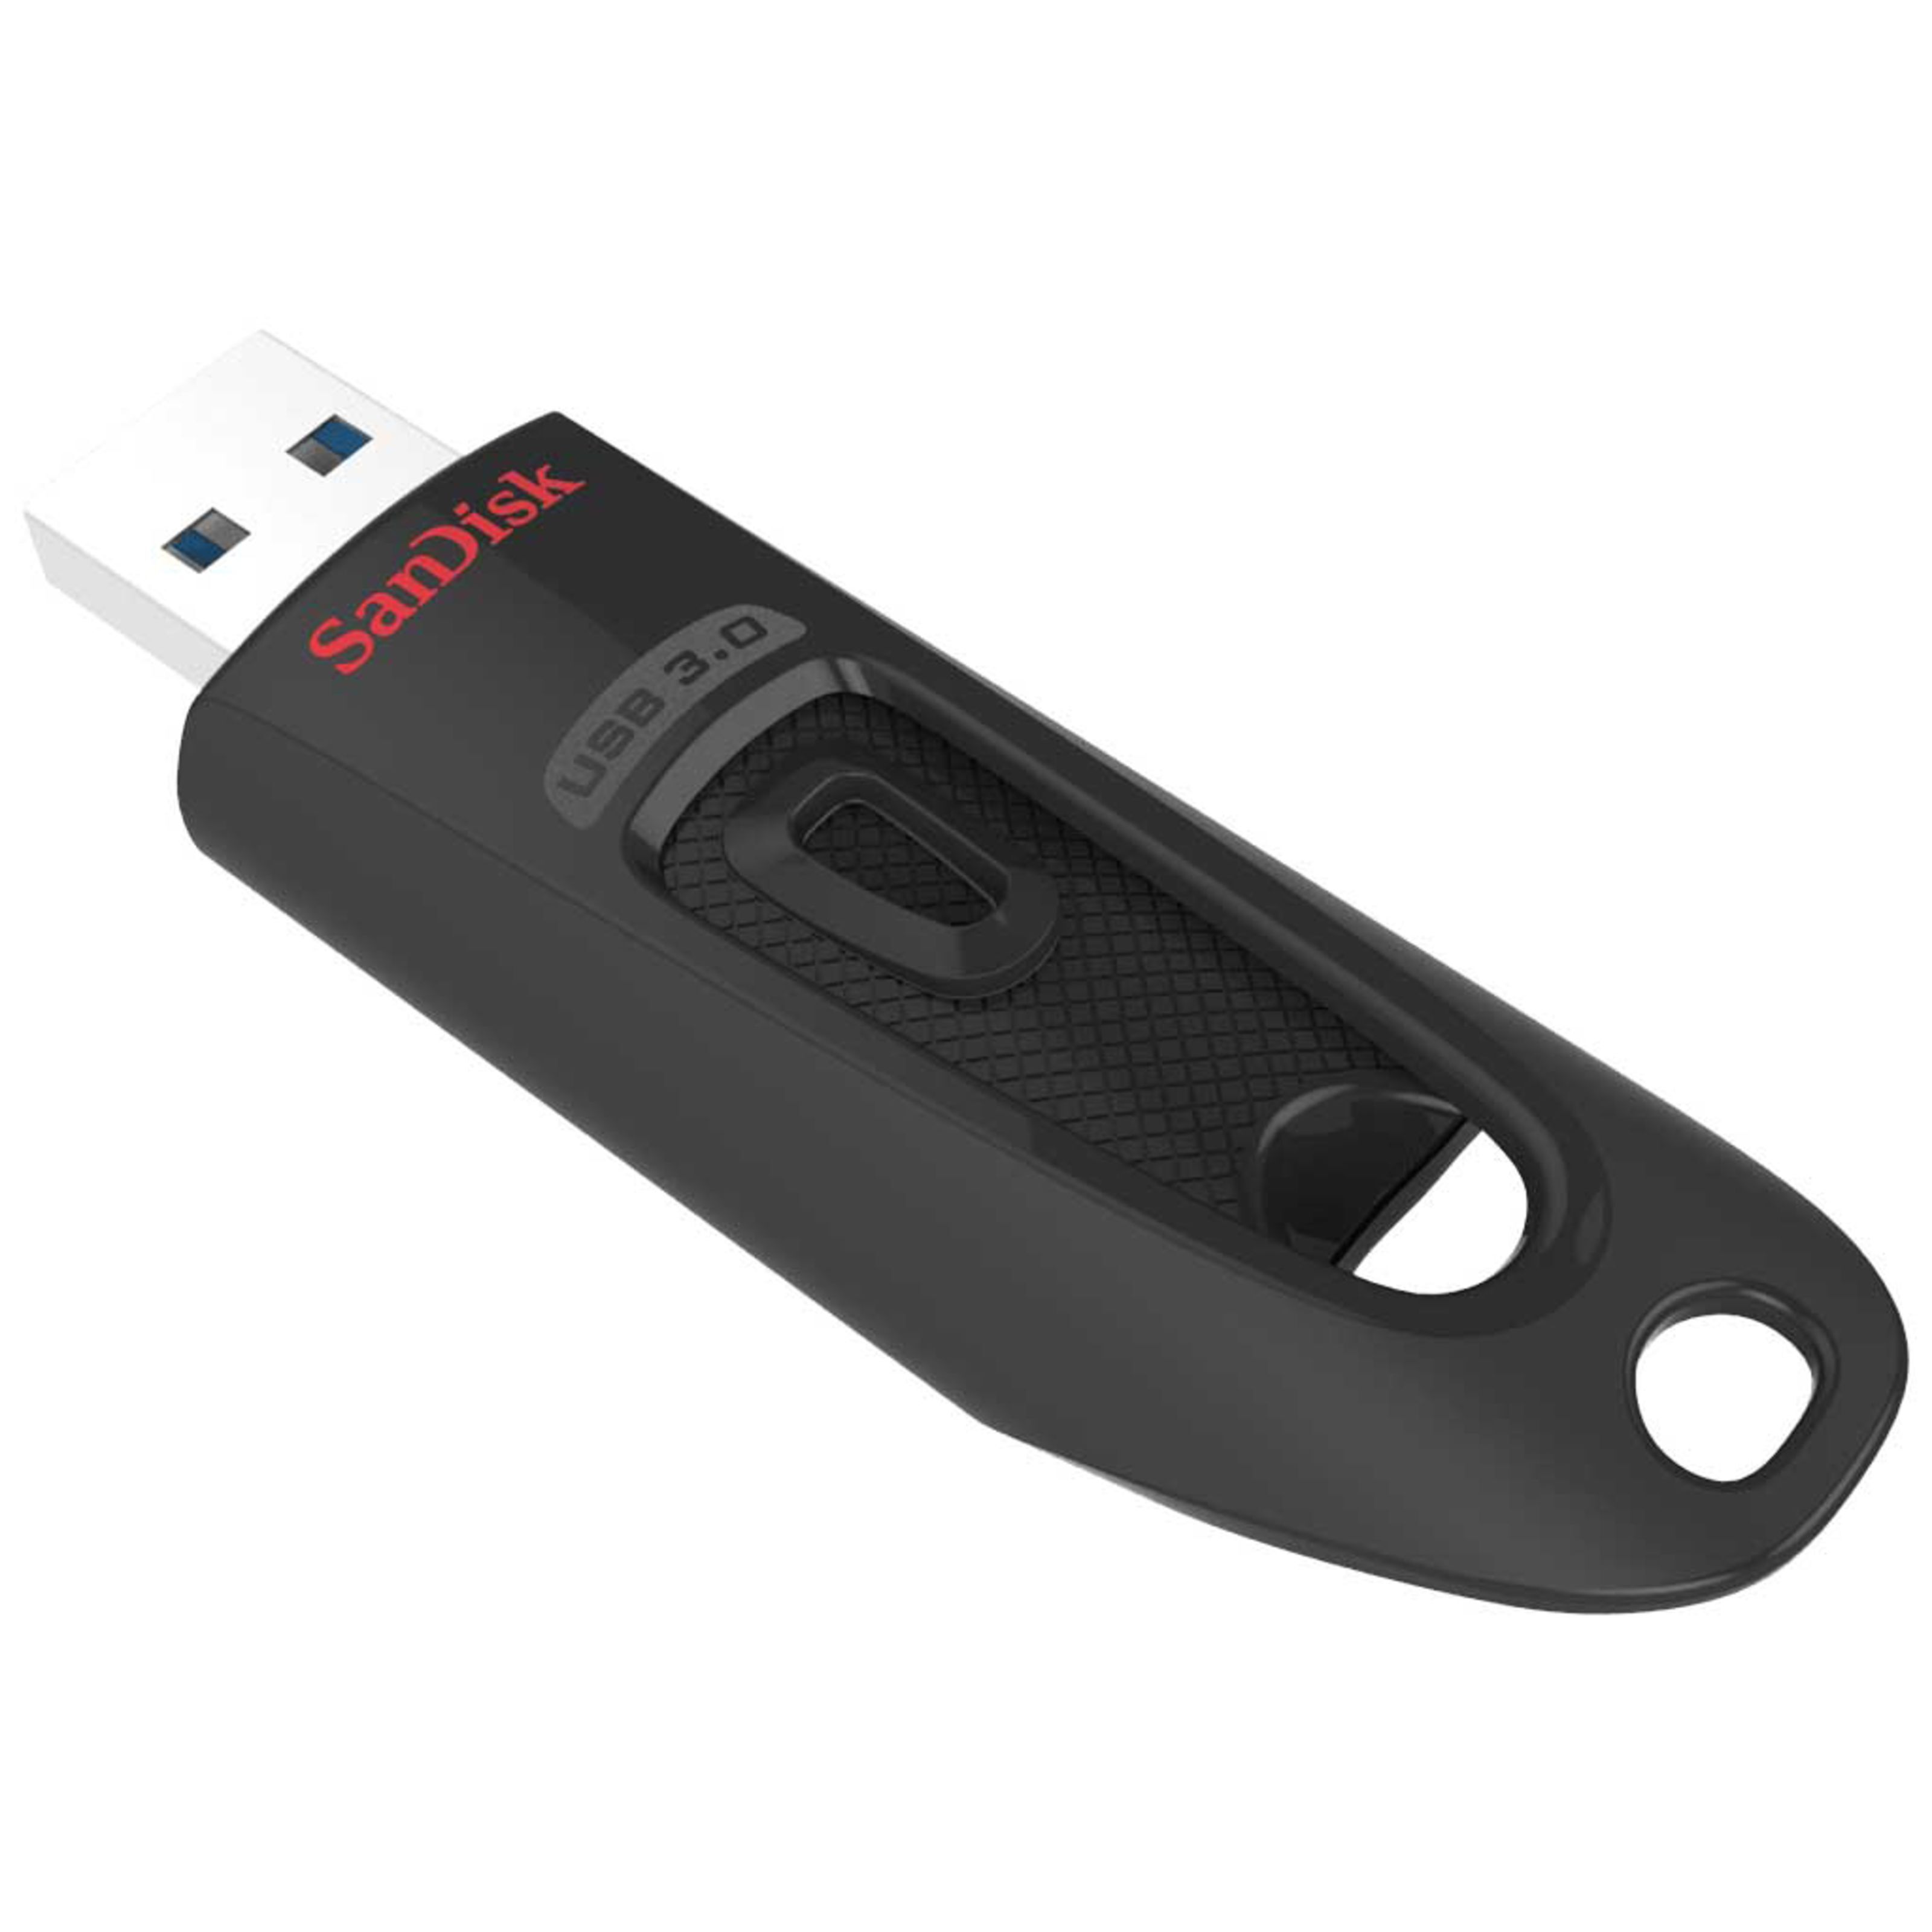 SanDisk Ultra USB 3.0 64GB - USB Stick